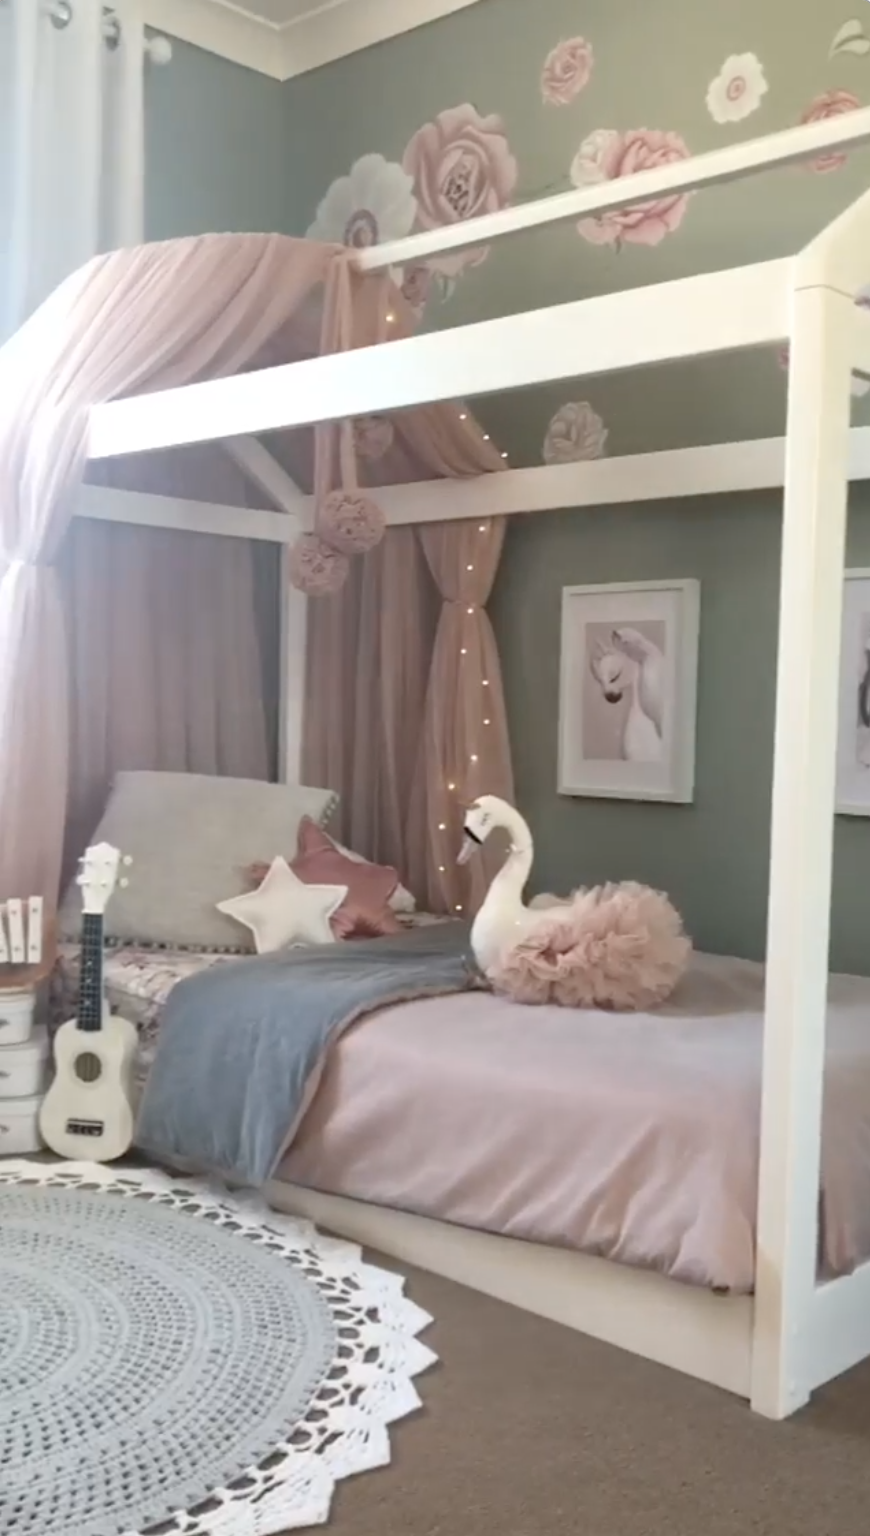 Girl's room inspo - Girl's room inspo -   18 diy Kids bedroom ideas